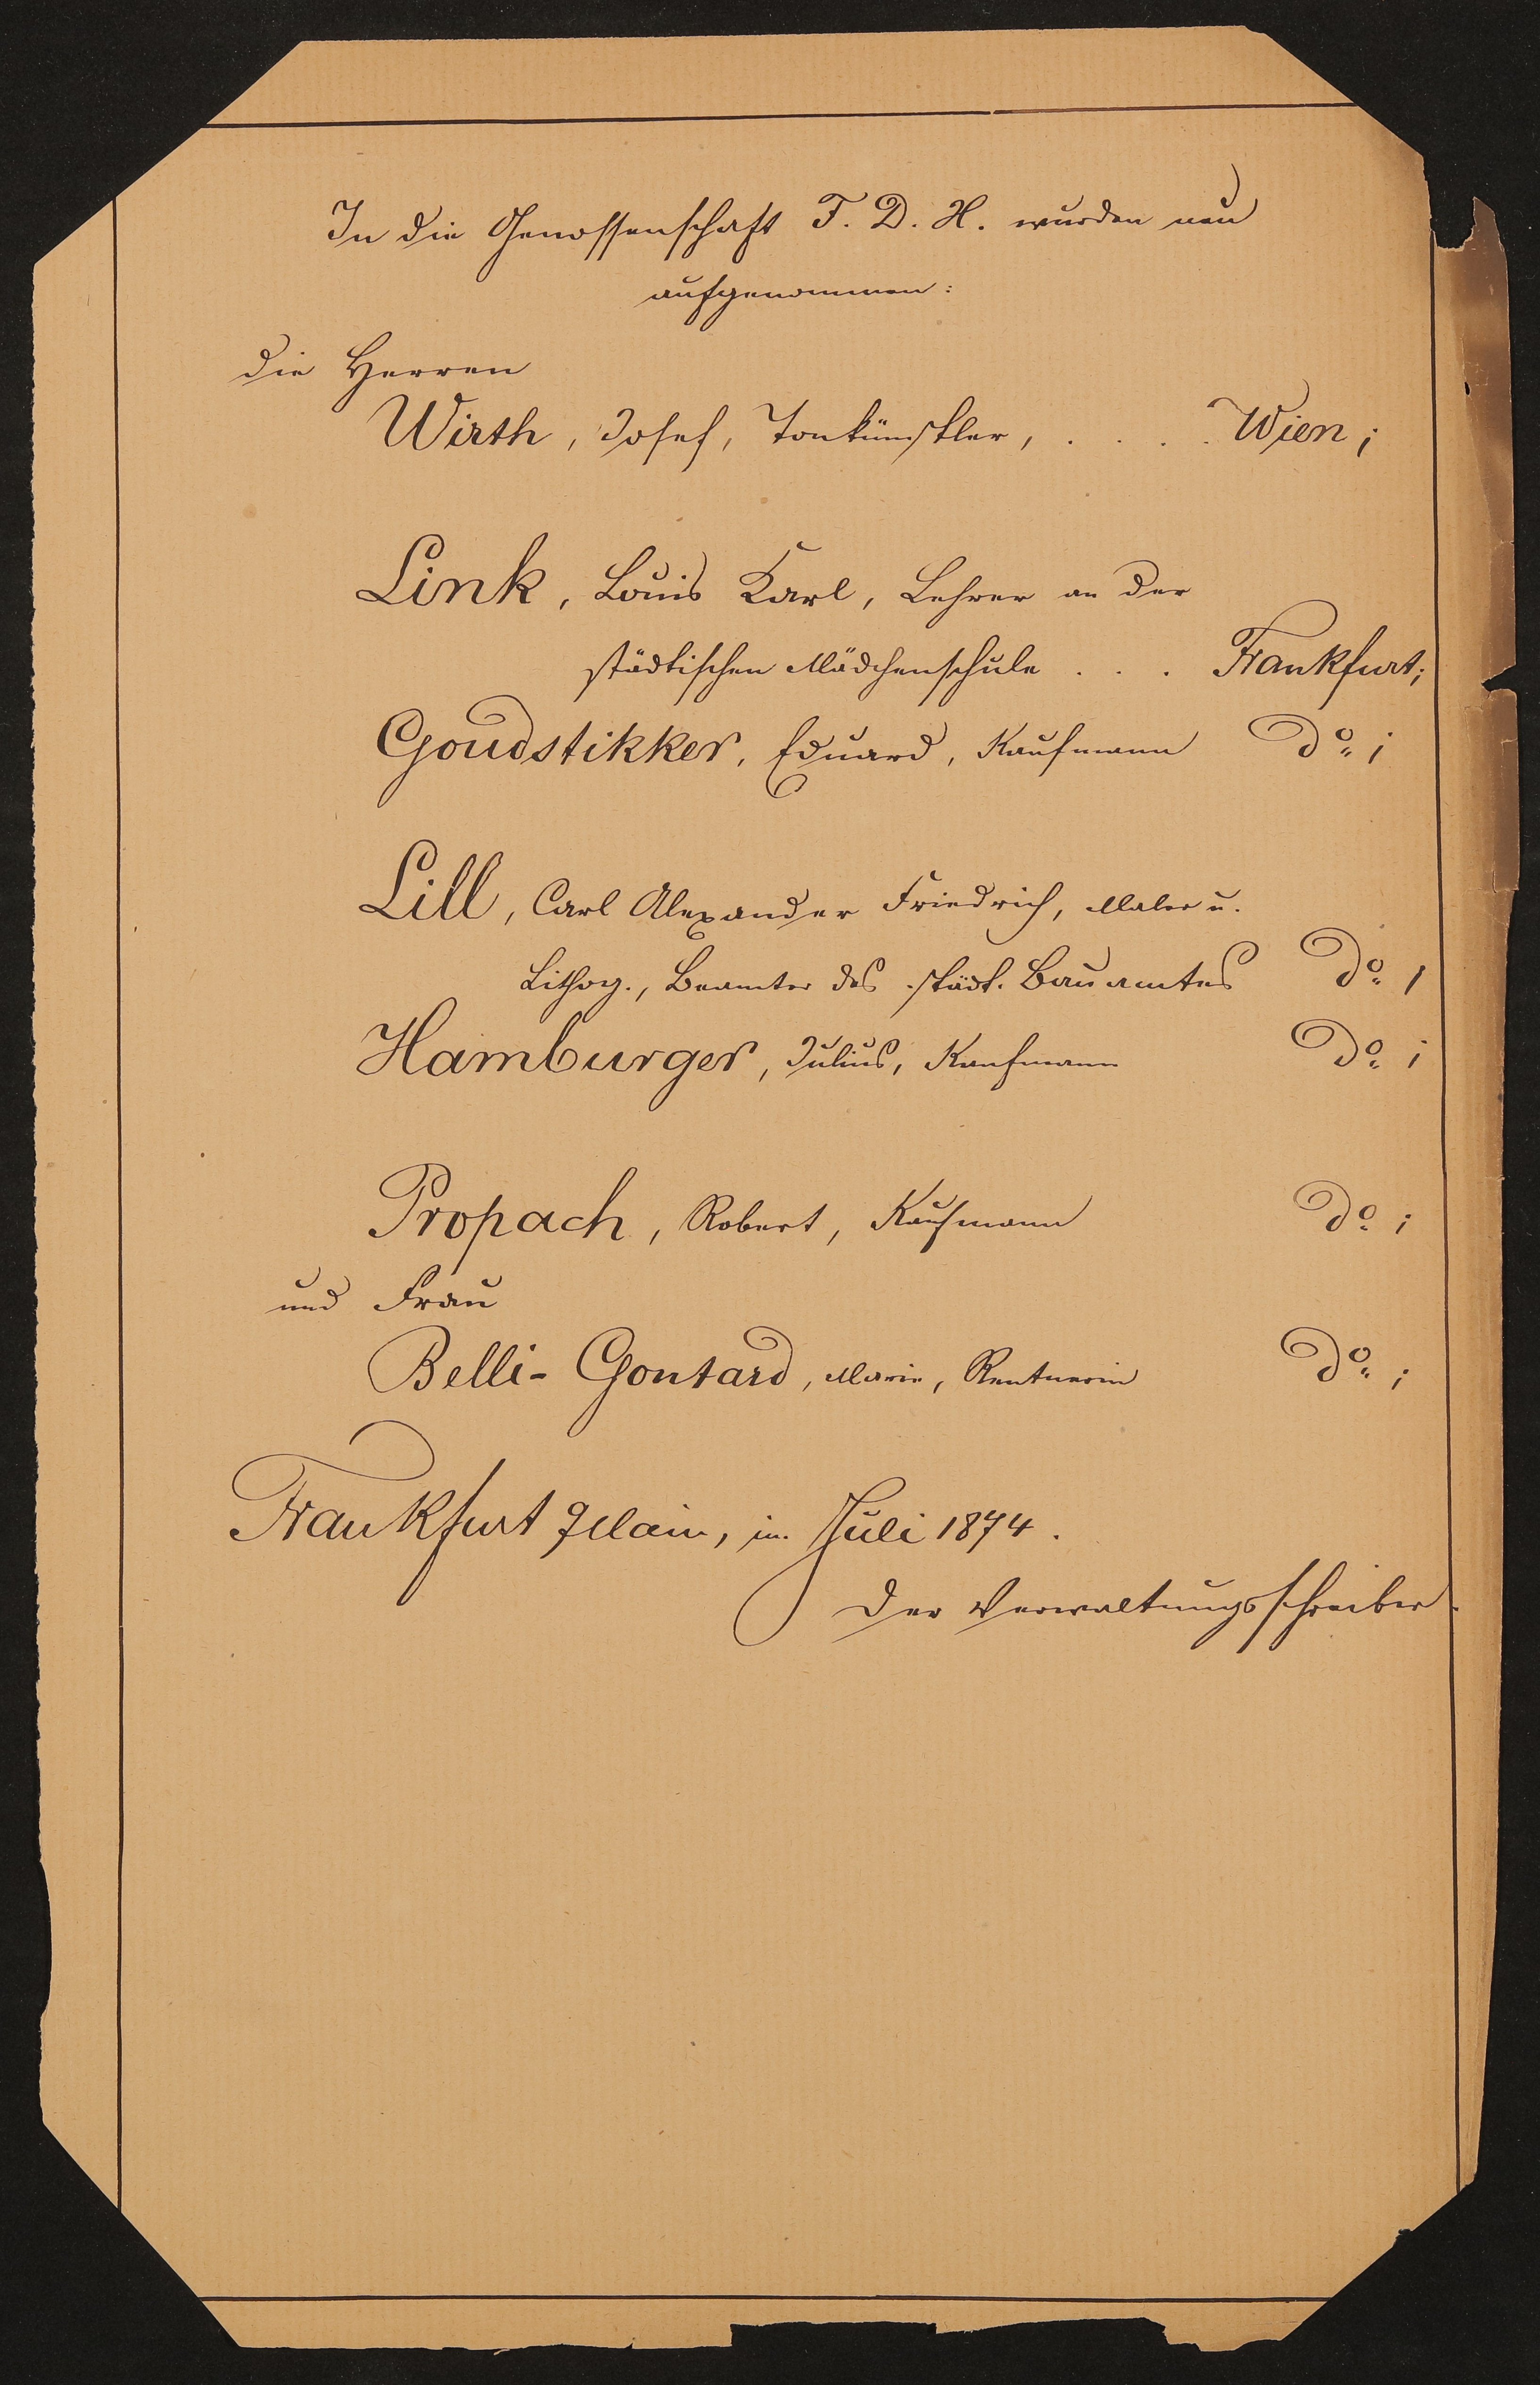 Liste "In die Genossenschaft des Freien Deutschen Hochstiftes wurden neu aufgenommen" (07.1874) (Freies Deutsches Hochstift / Frankfurter Goethe-Museum Public Domain Mark)